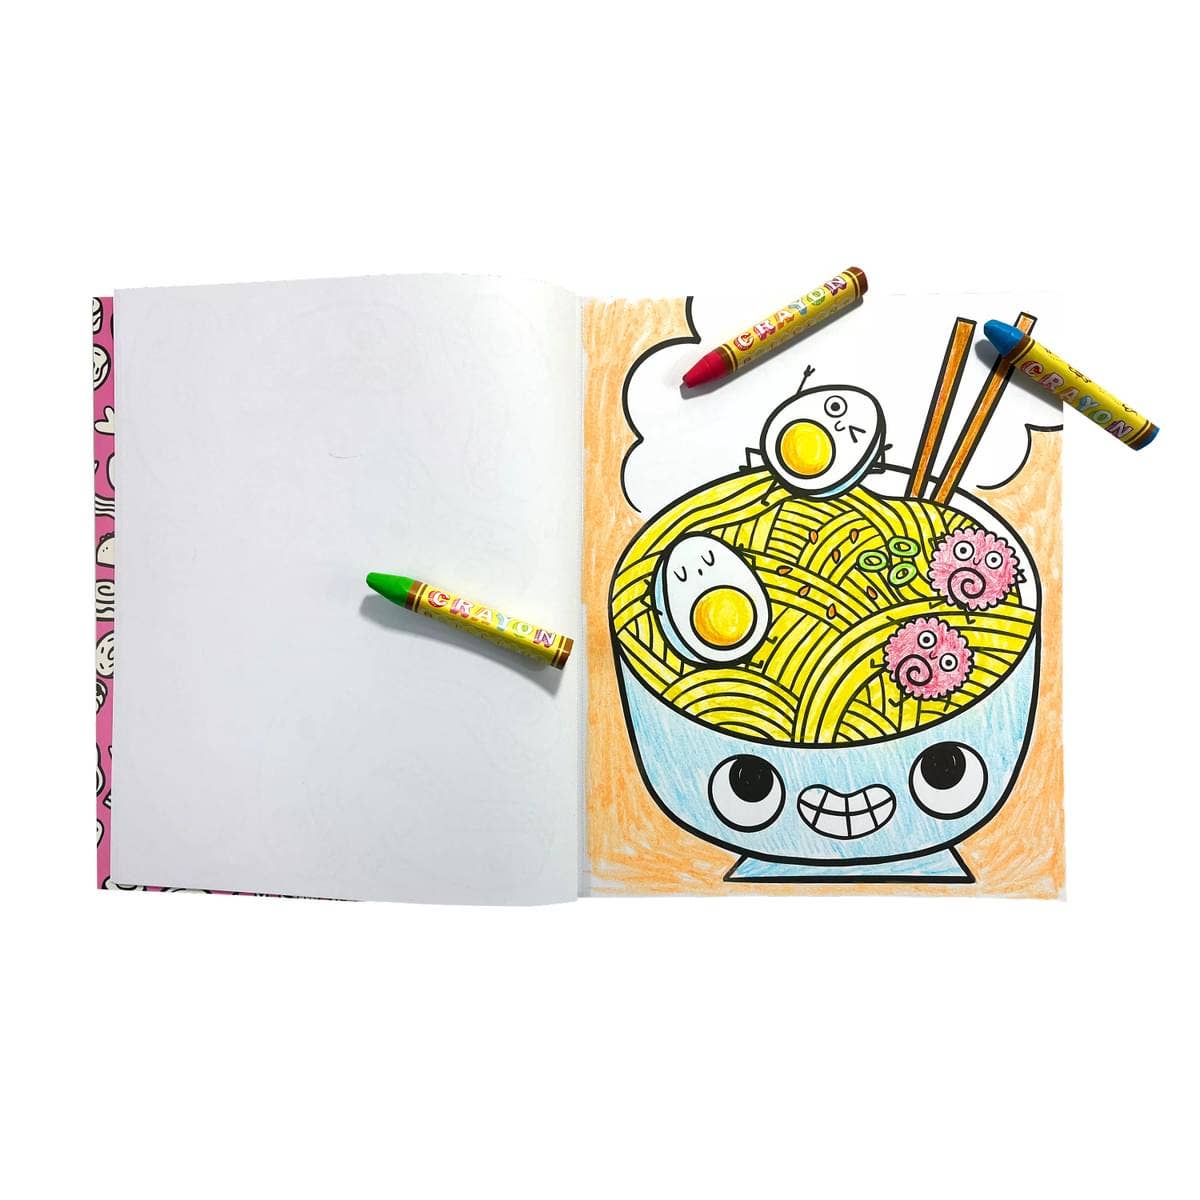 Livre à colorier : Happy Snacks (8" x 10")